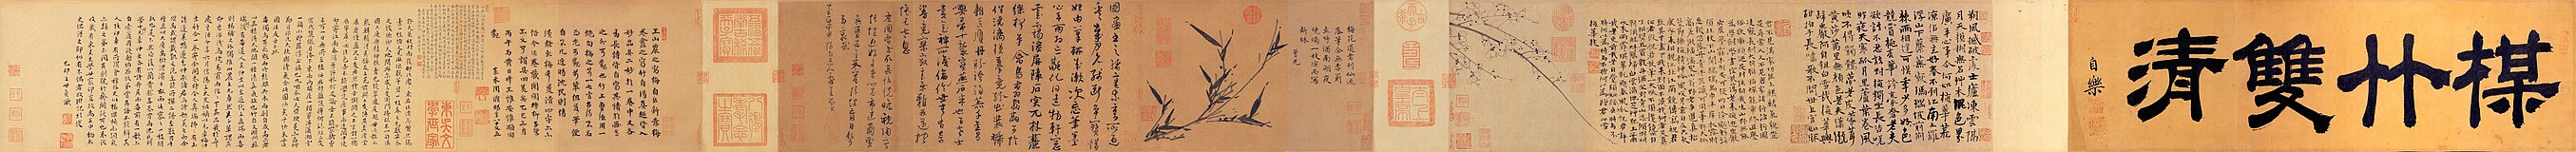 Dubbele zuiverheid van bamboe en pruimenbloesem, een handrol met een bamboeschildering van Wu Zhen (1280–1354) en een pruimenbloesemschildering van Wang Mian; gewassen inkt op papier, collectie Nationaal Paleismuseum[3]